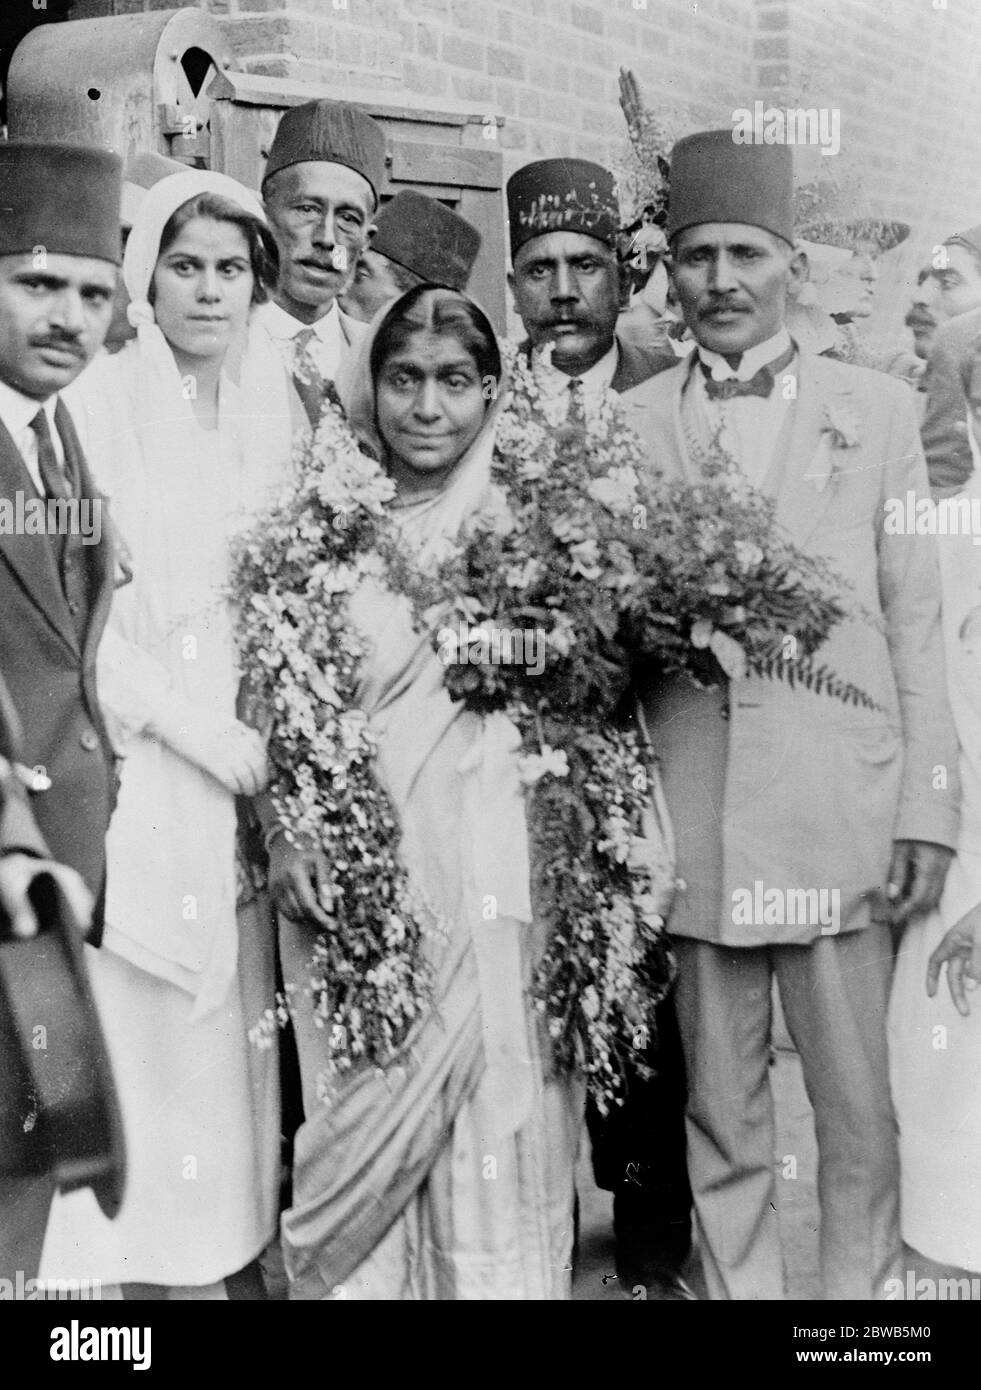 Femme disciple de Gandhi en Afrique du Sud . Mme Sarojini Naidu , disciple de Gandhi , photographiée à son arrivée au Cap , où elle a été reçue par des partisans . 8 avril 1924 Banque D'Images